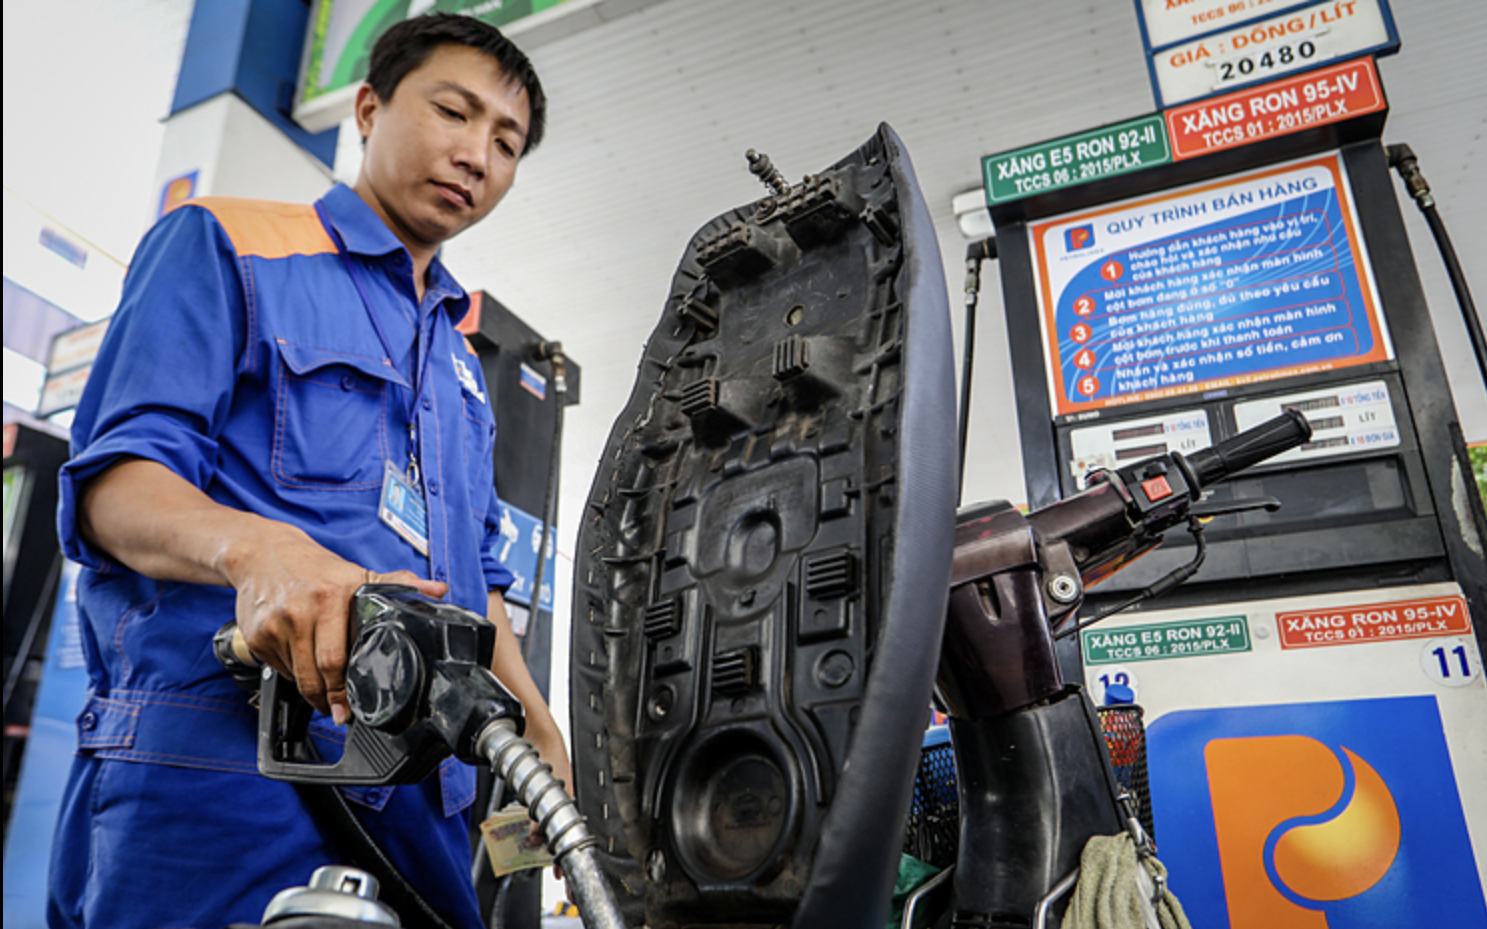 Bán xăng dầu phải xuất hóa đơn điện tử: Nhìn từ những góc khuất